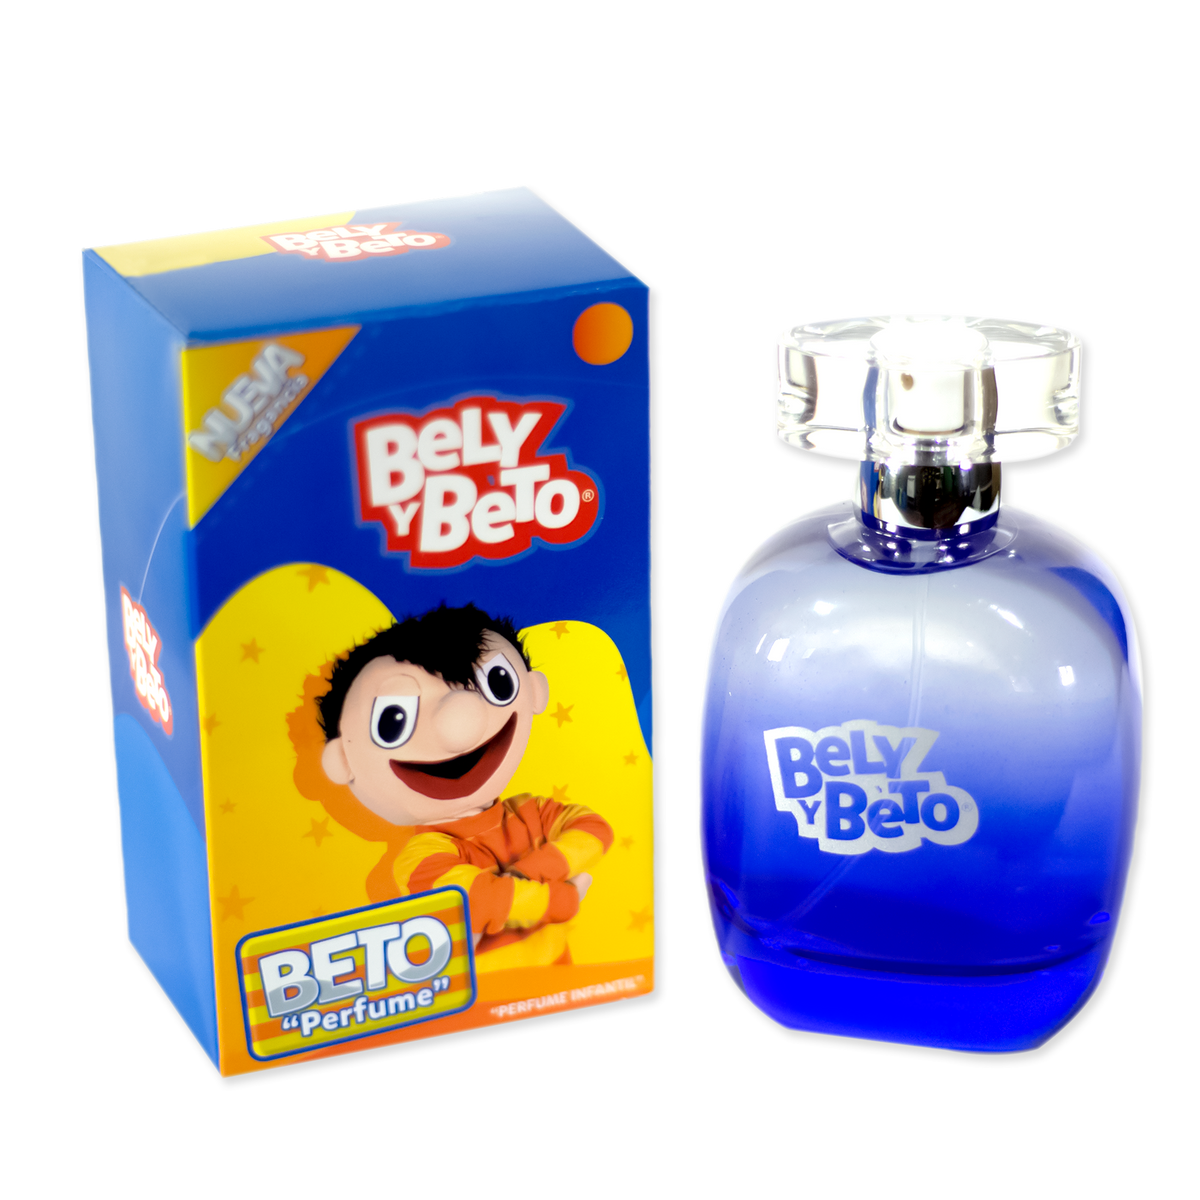 Perfume Beto Bely Y Beto Tienda Oficial 0617